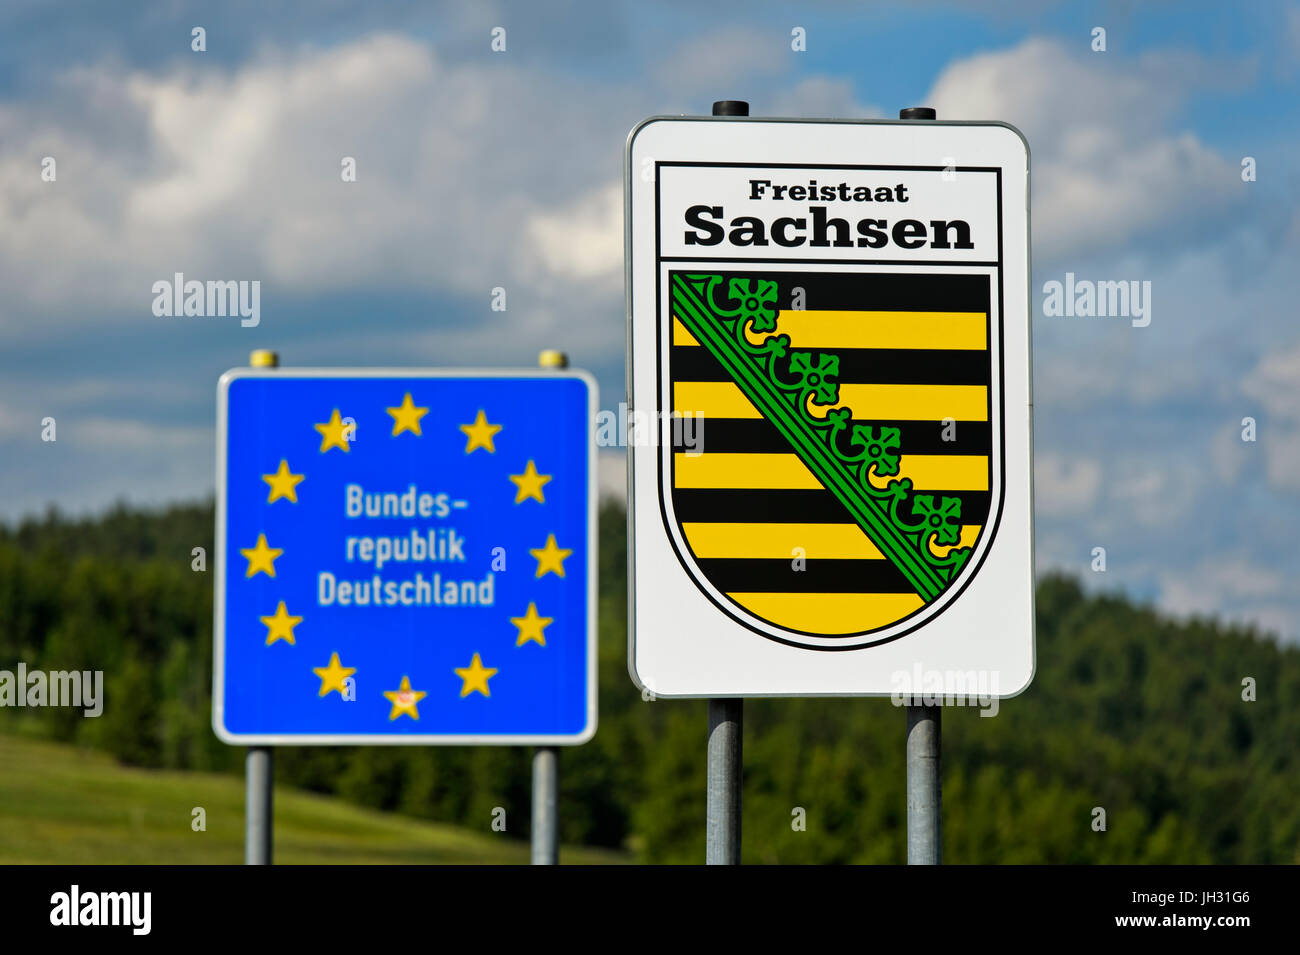 Melden Sie mit dem Wappen des Zeichens Freistaat Sachsen und Grenze der Bundesrepublik Deutschland, Grenzübergang Oberwiesenthal, Sachsen, Deutschland Stockfoto